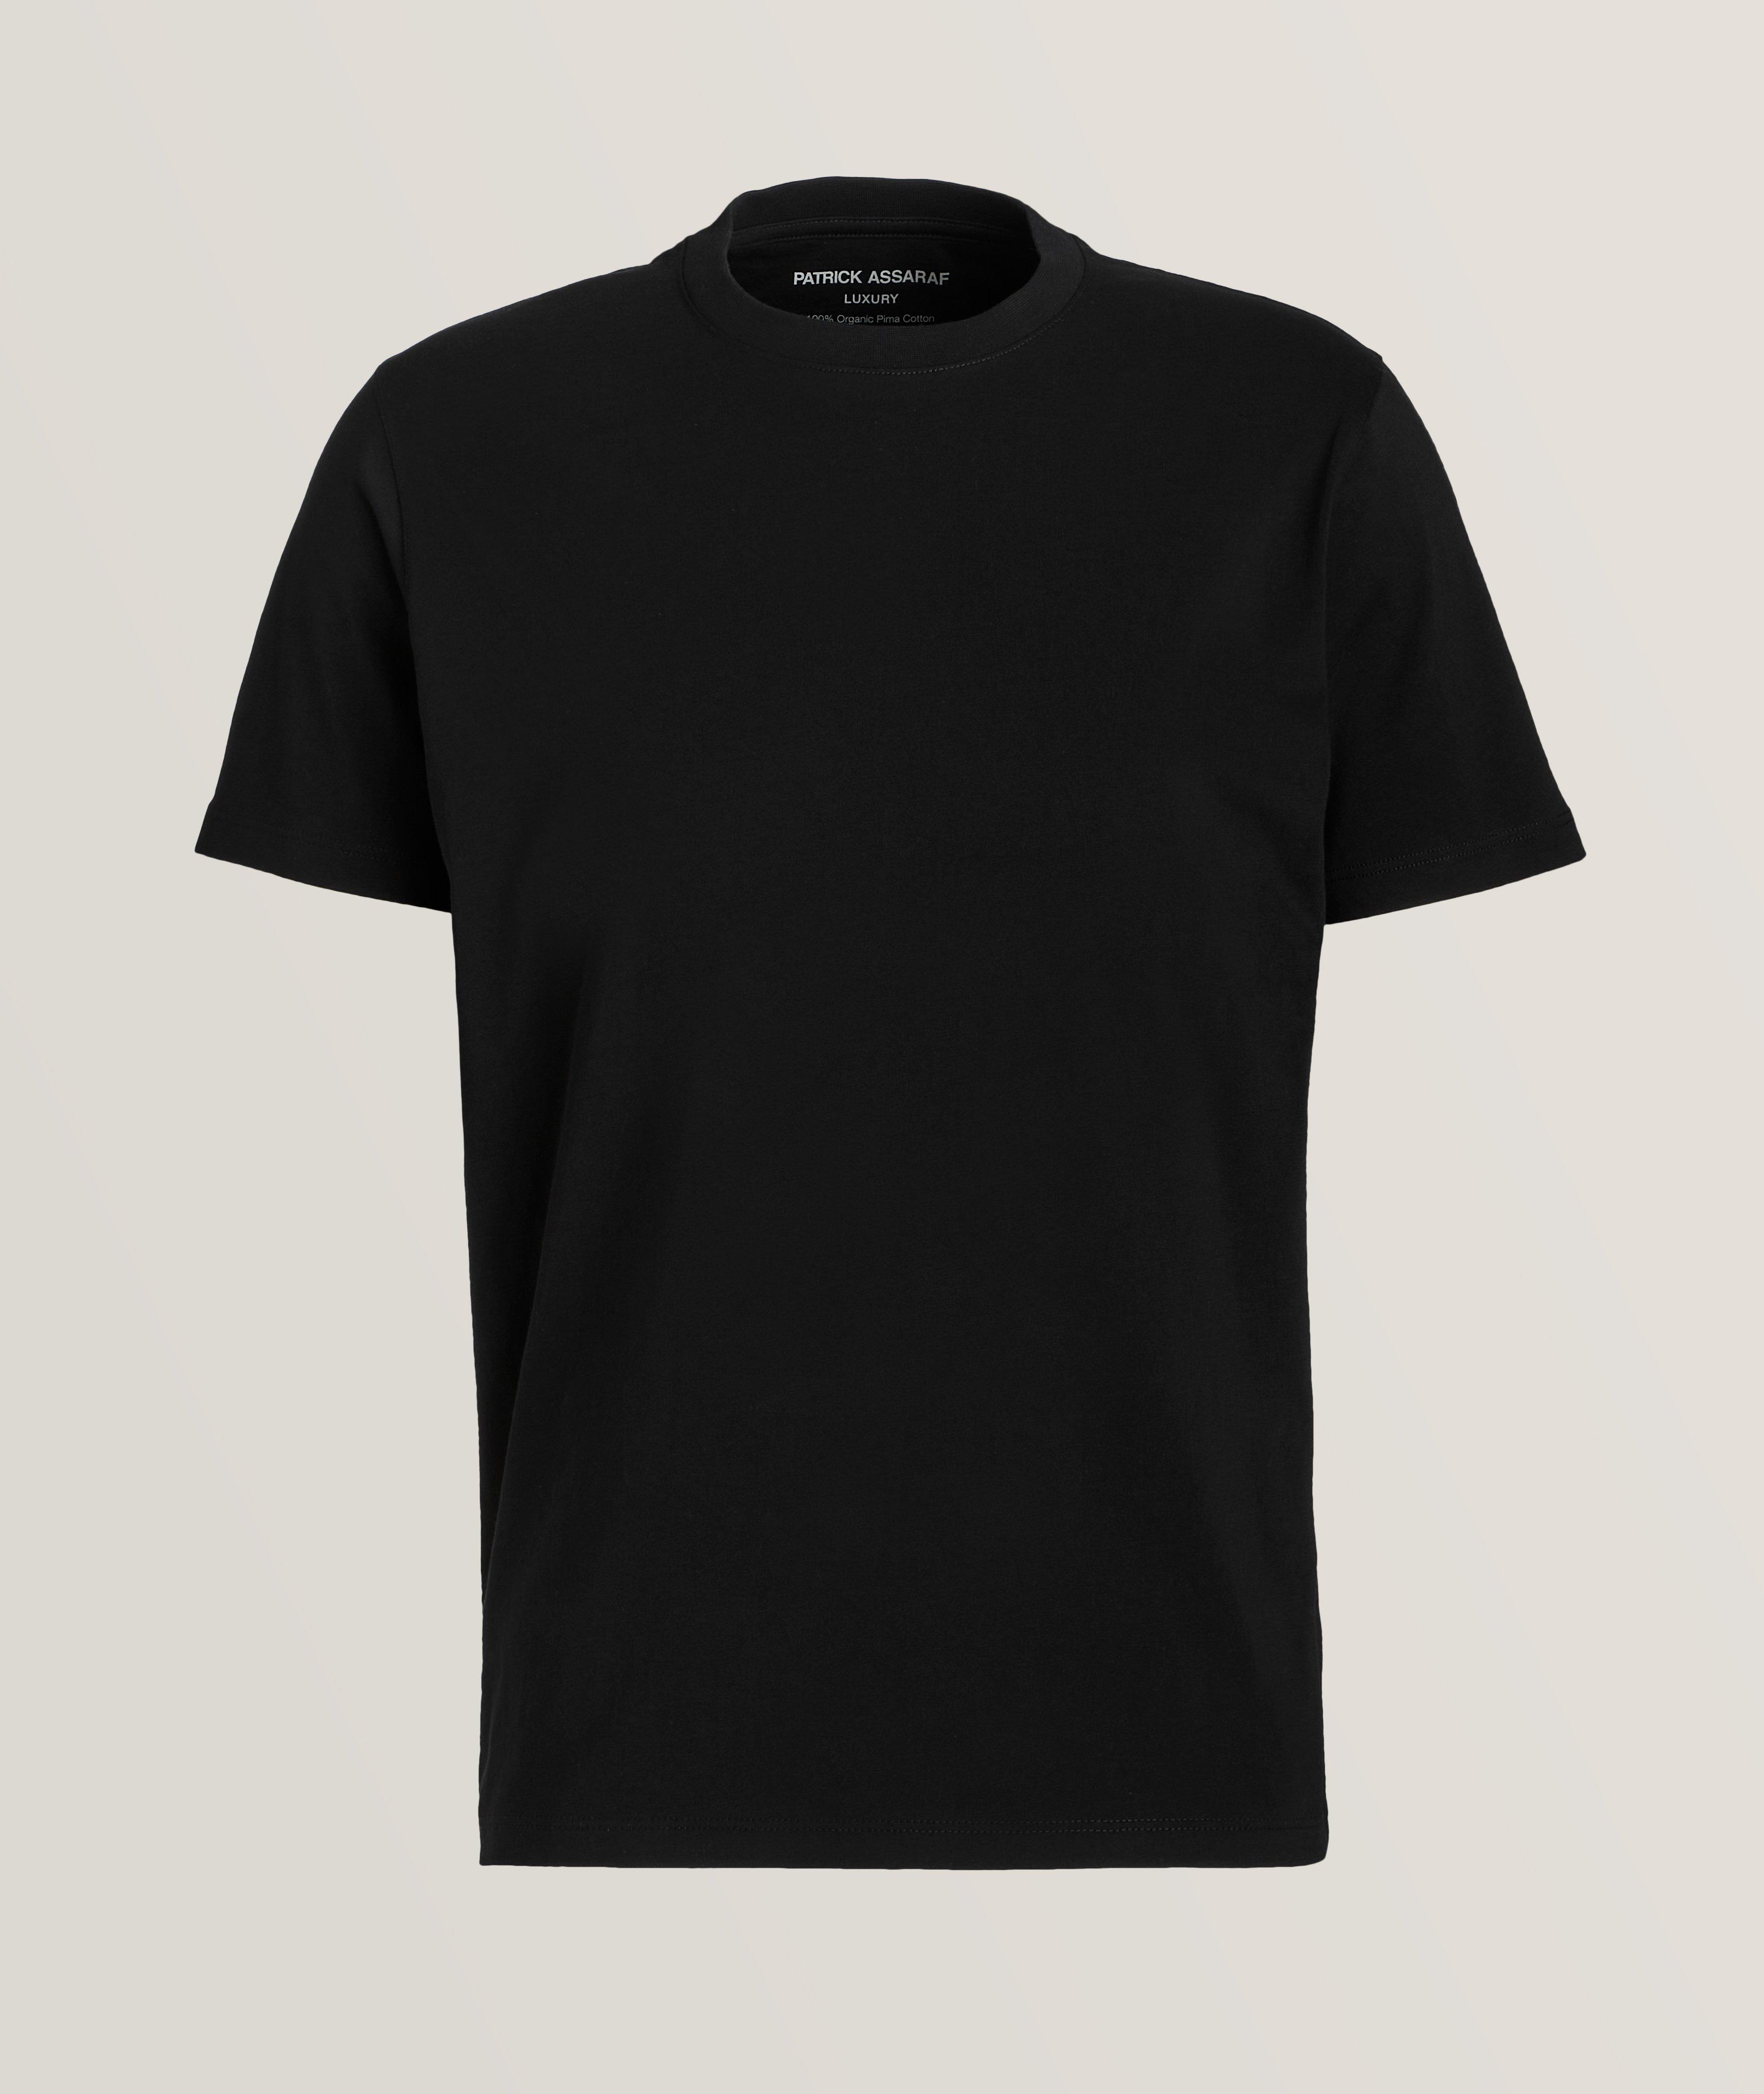 T-shirt en coton pima biologique à encolure ronde image 0